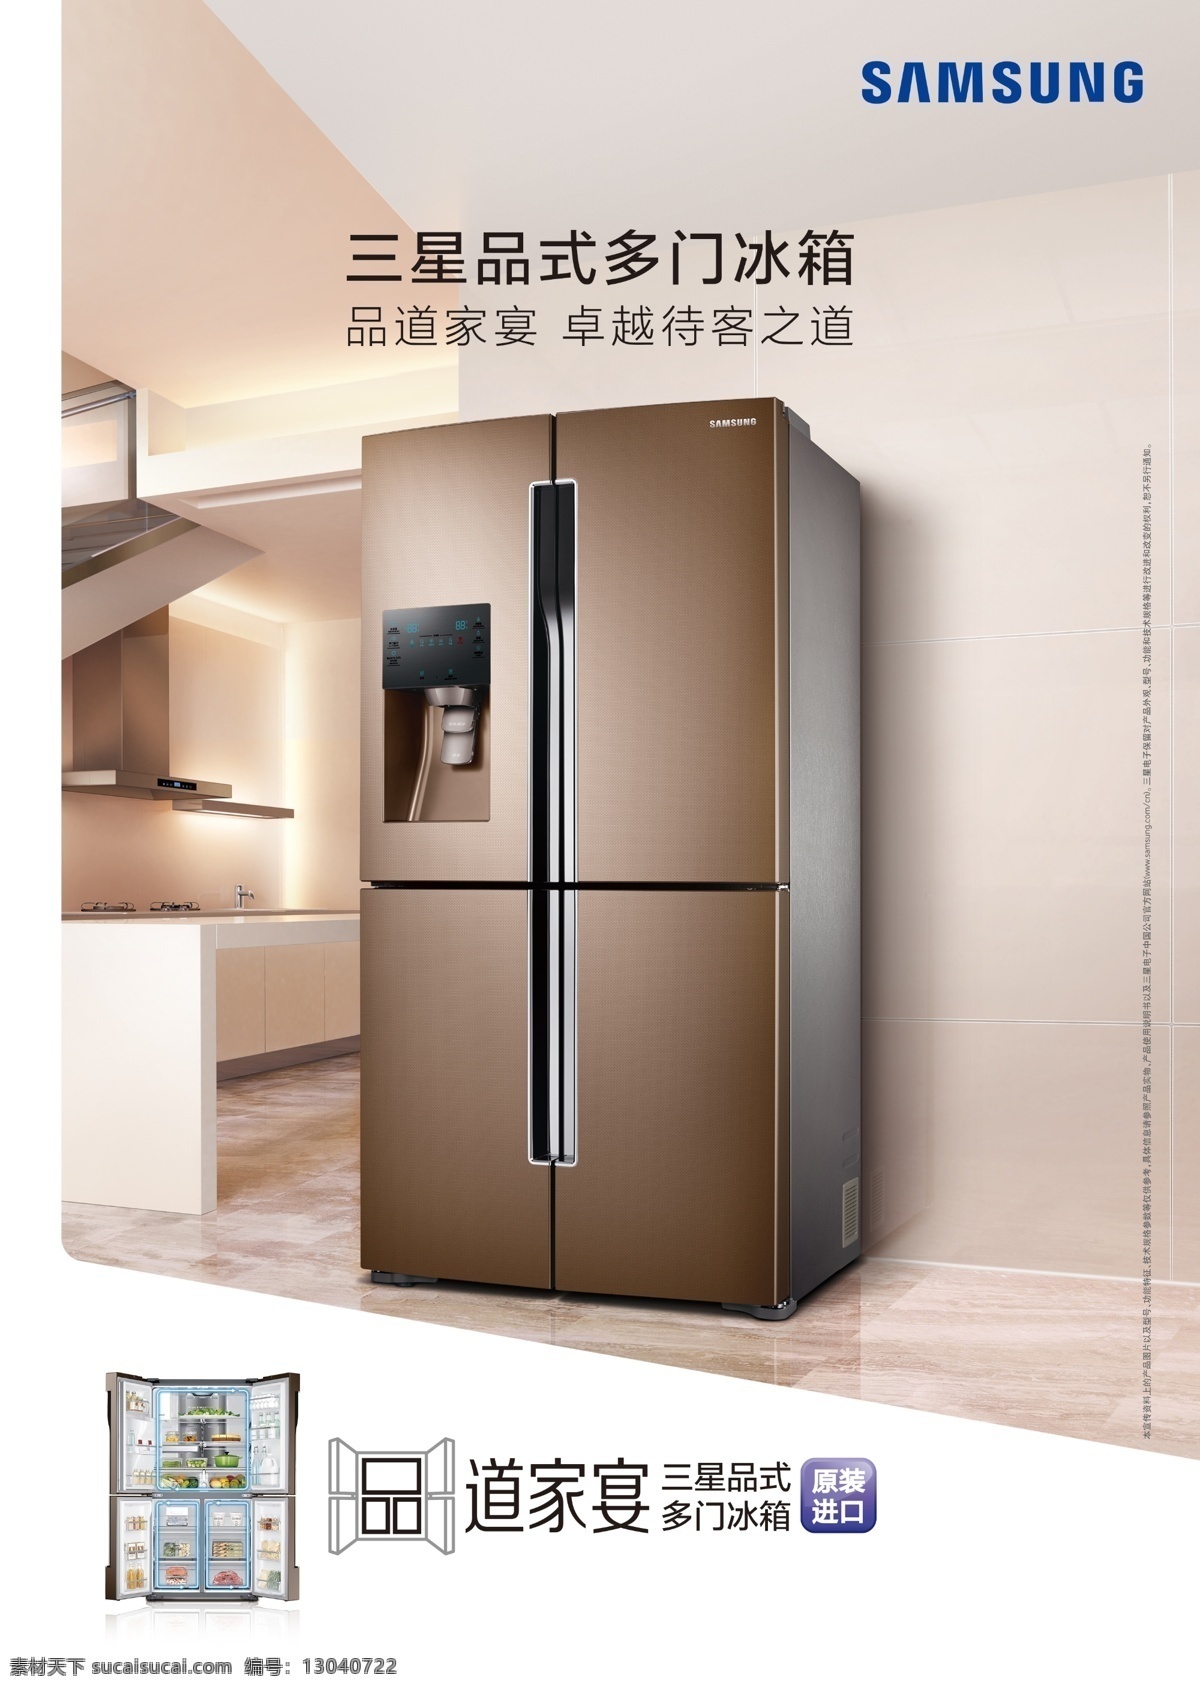 三星 t9000 冰箱 logo 标志 道家宴 冰箱模型 家电 多门冰箱 双门冰箱 分层 白色